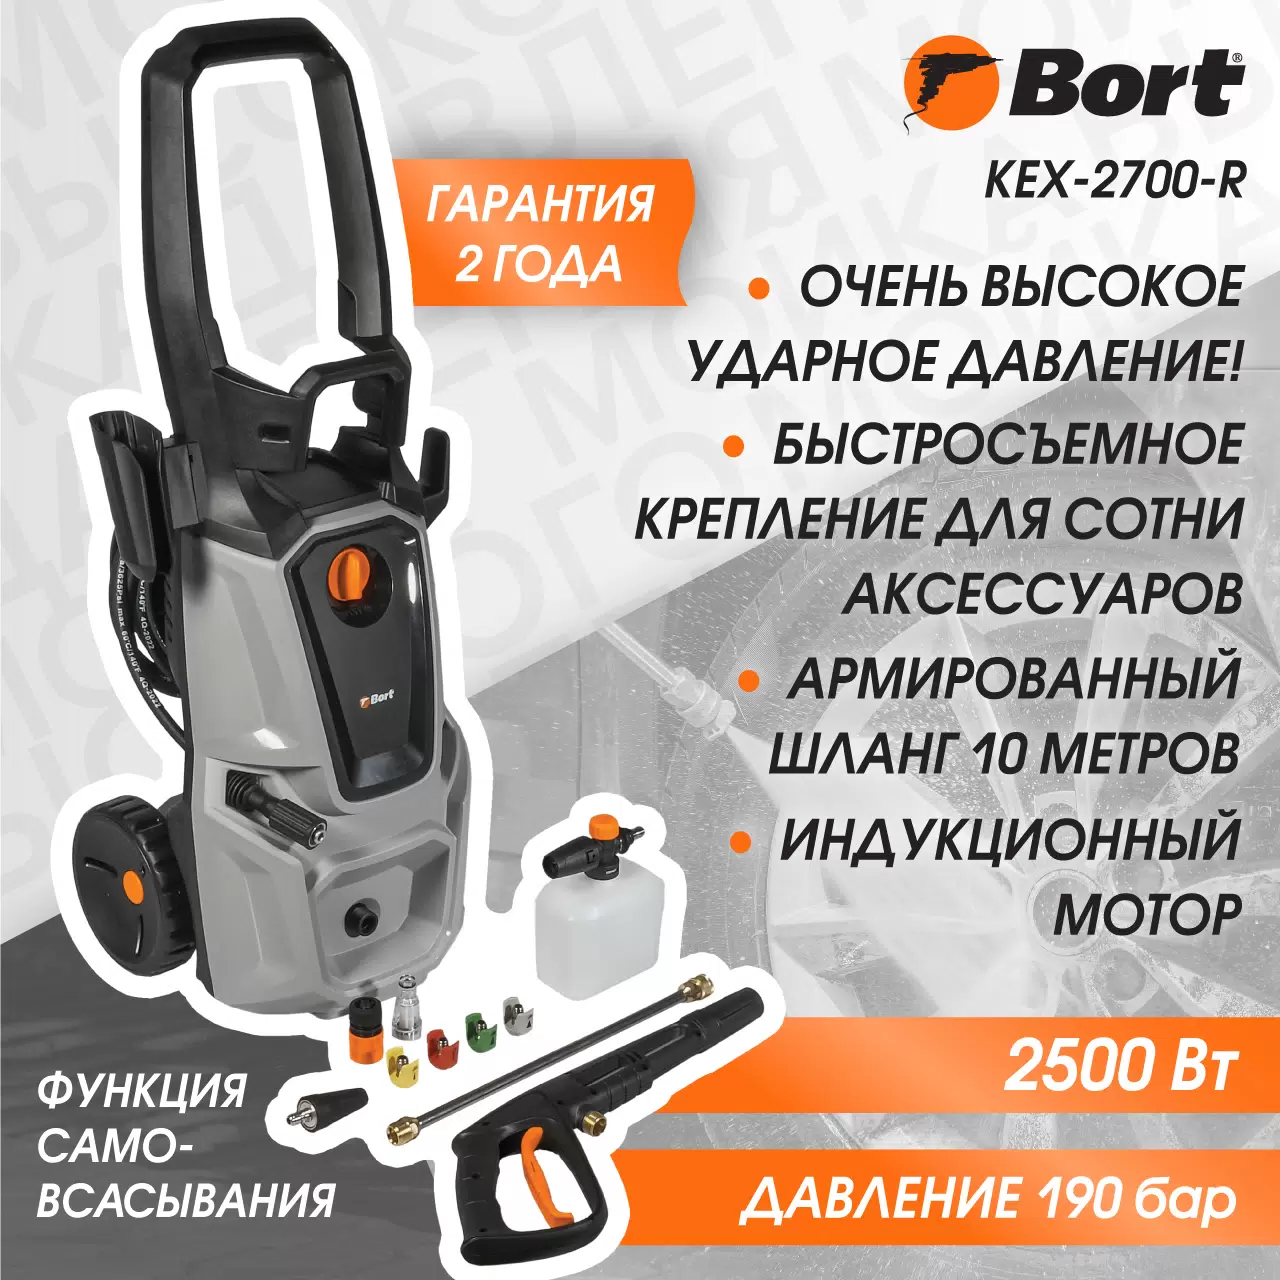 Мойка высокого давления Bort KEX-2700-R - VLARNIKA в Донецке